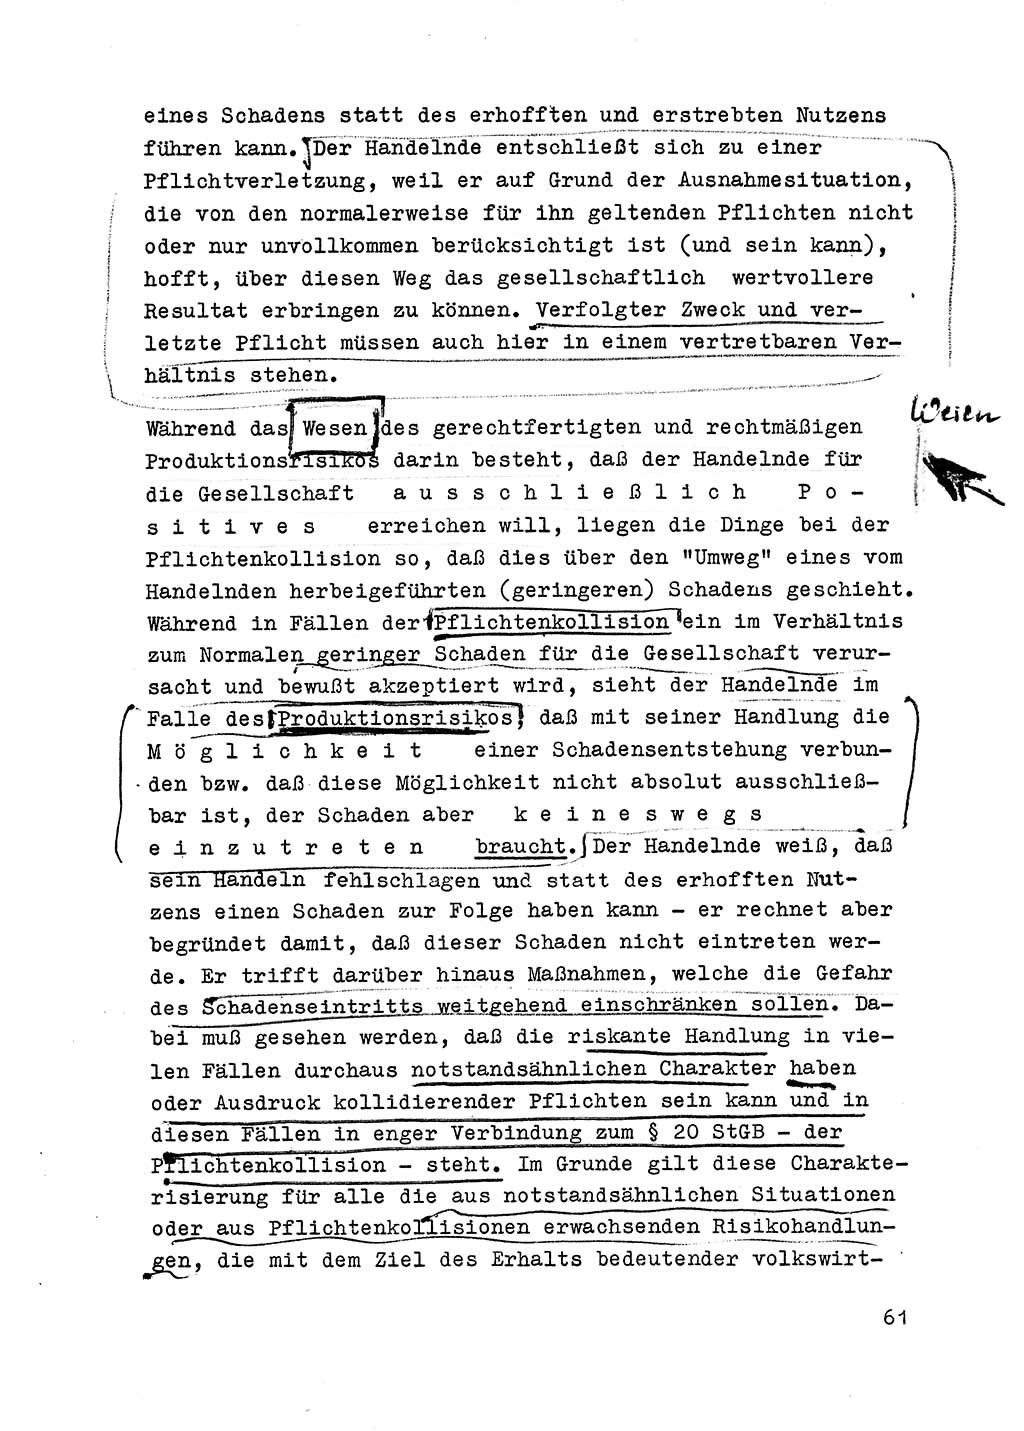 Strafrecht der DDR (Deutsche Demokratische Republik), Besonderer Teil, Lehrmaterial, Heft 6 1970, Seite 61 (Strafr. DDR BT Lehrmat. H. 6 1970, S. 61)